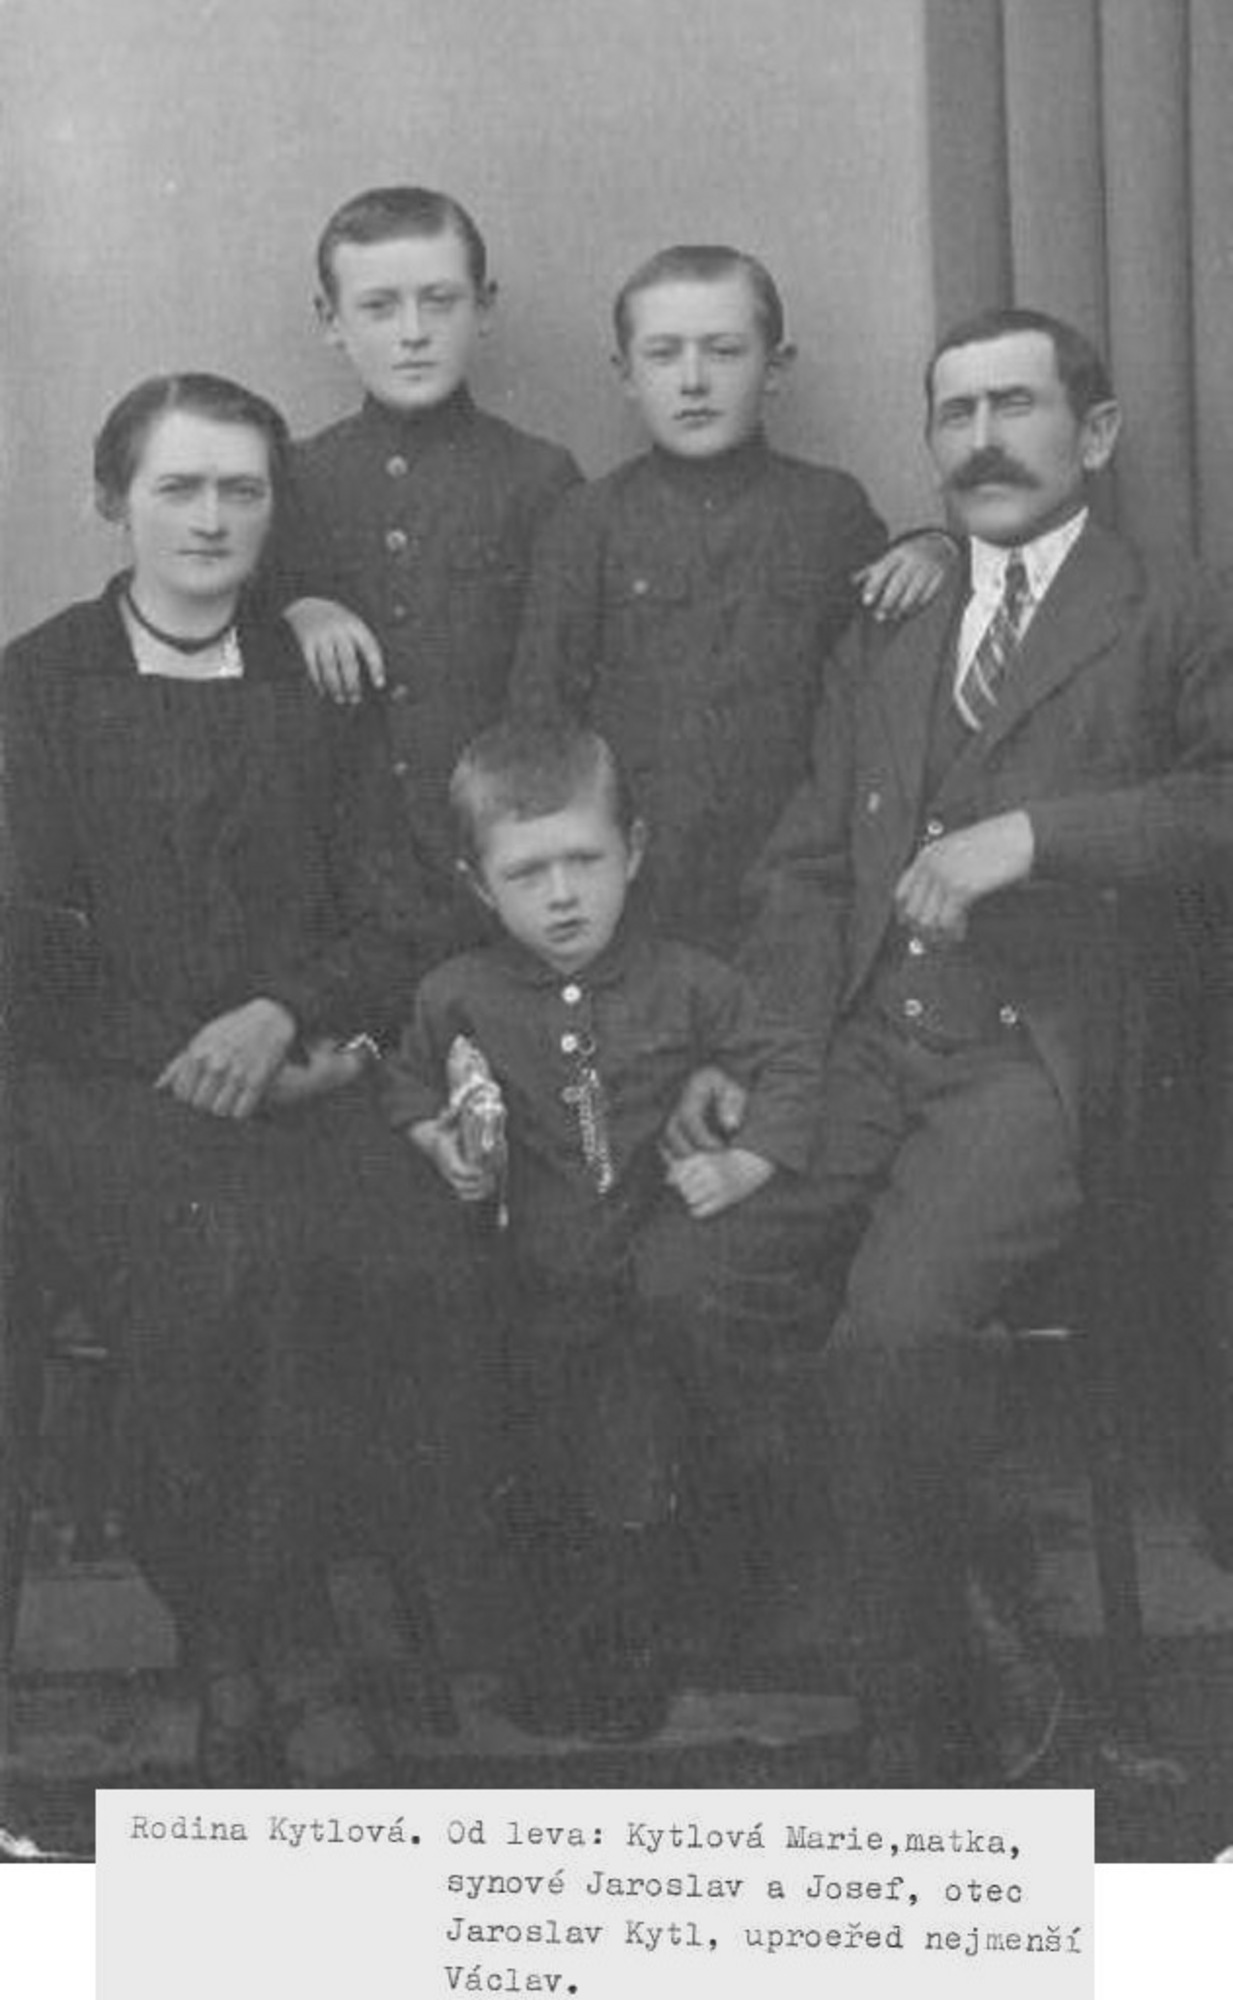 Václav Kytl's family